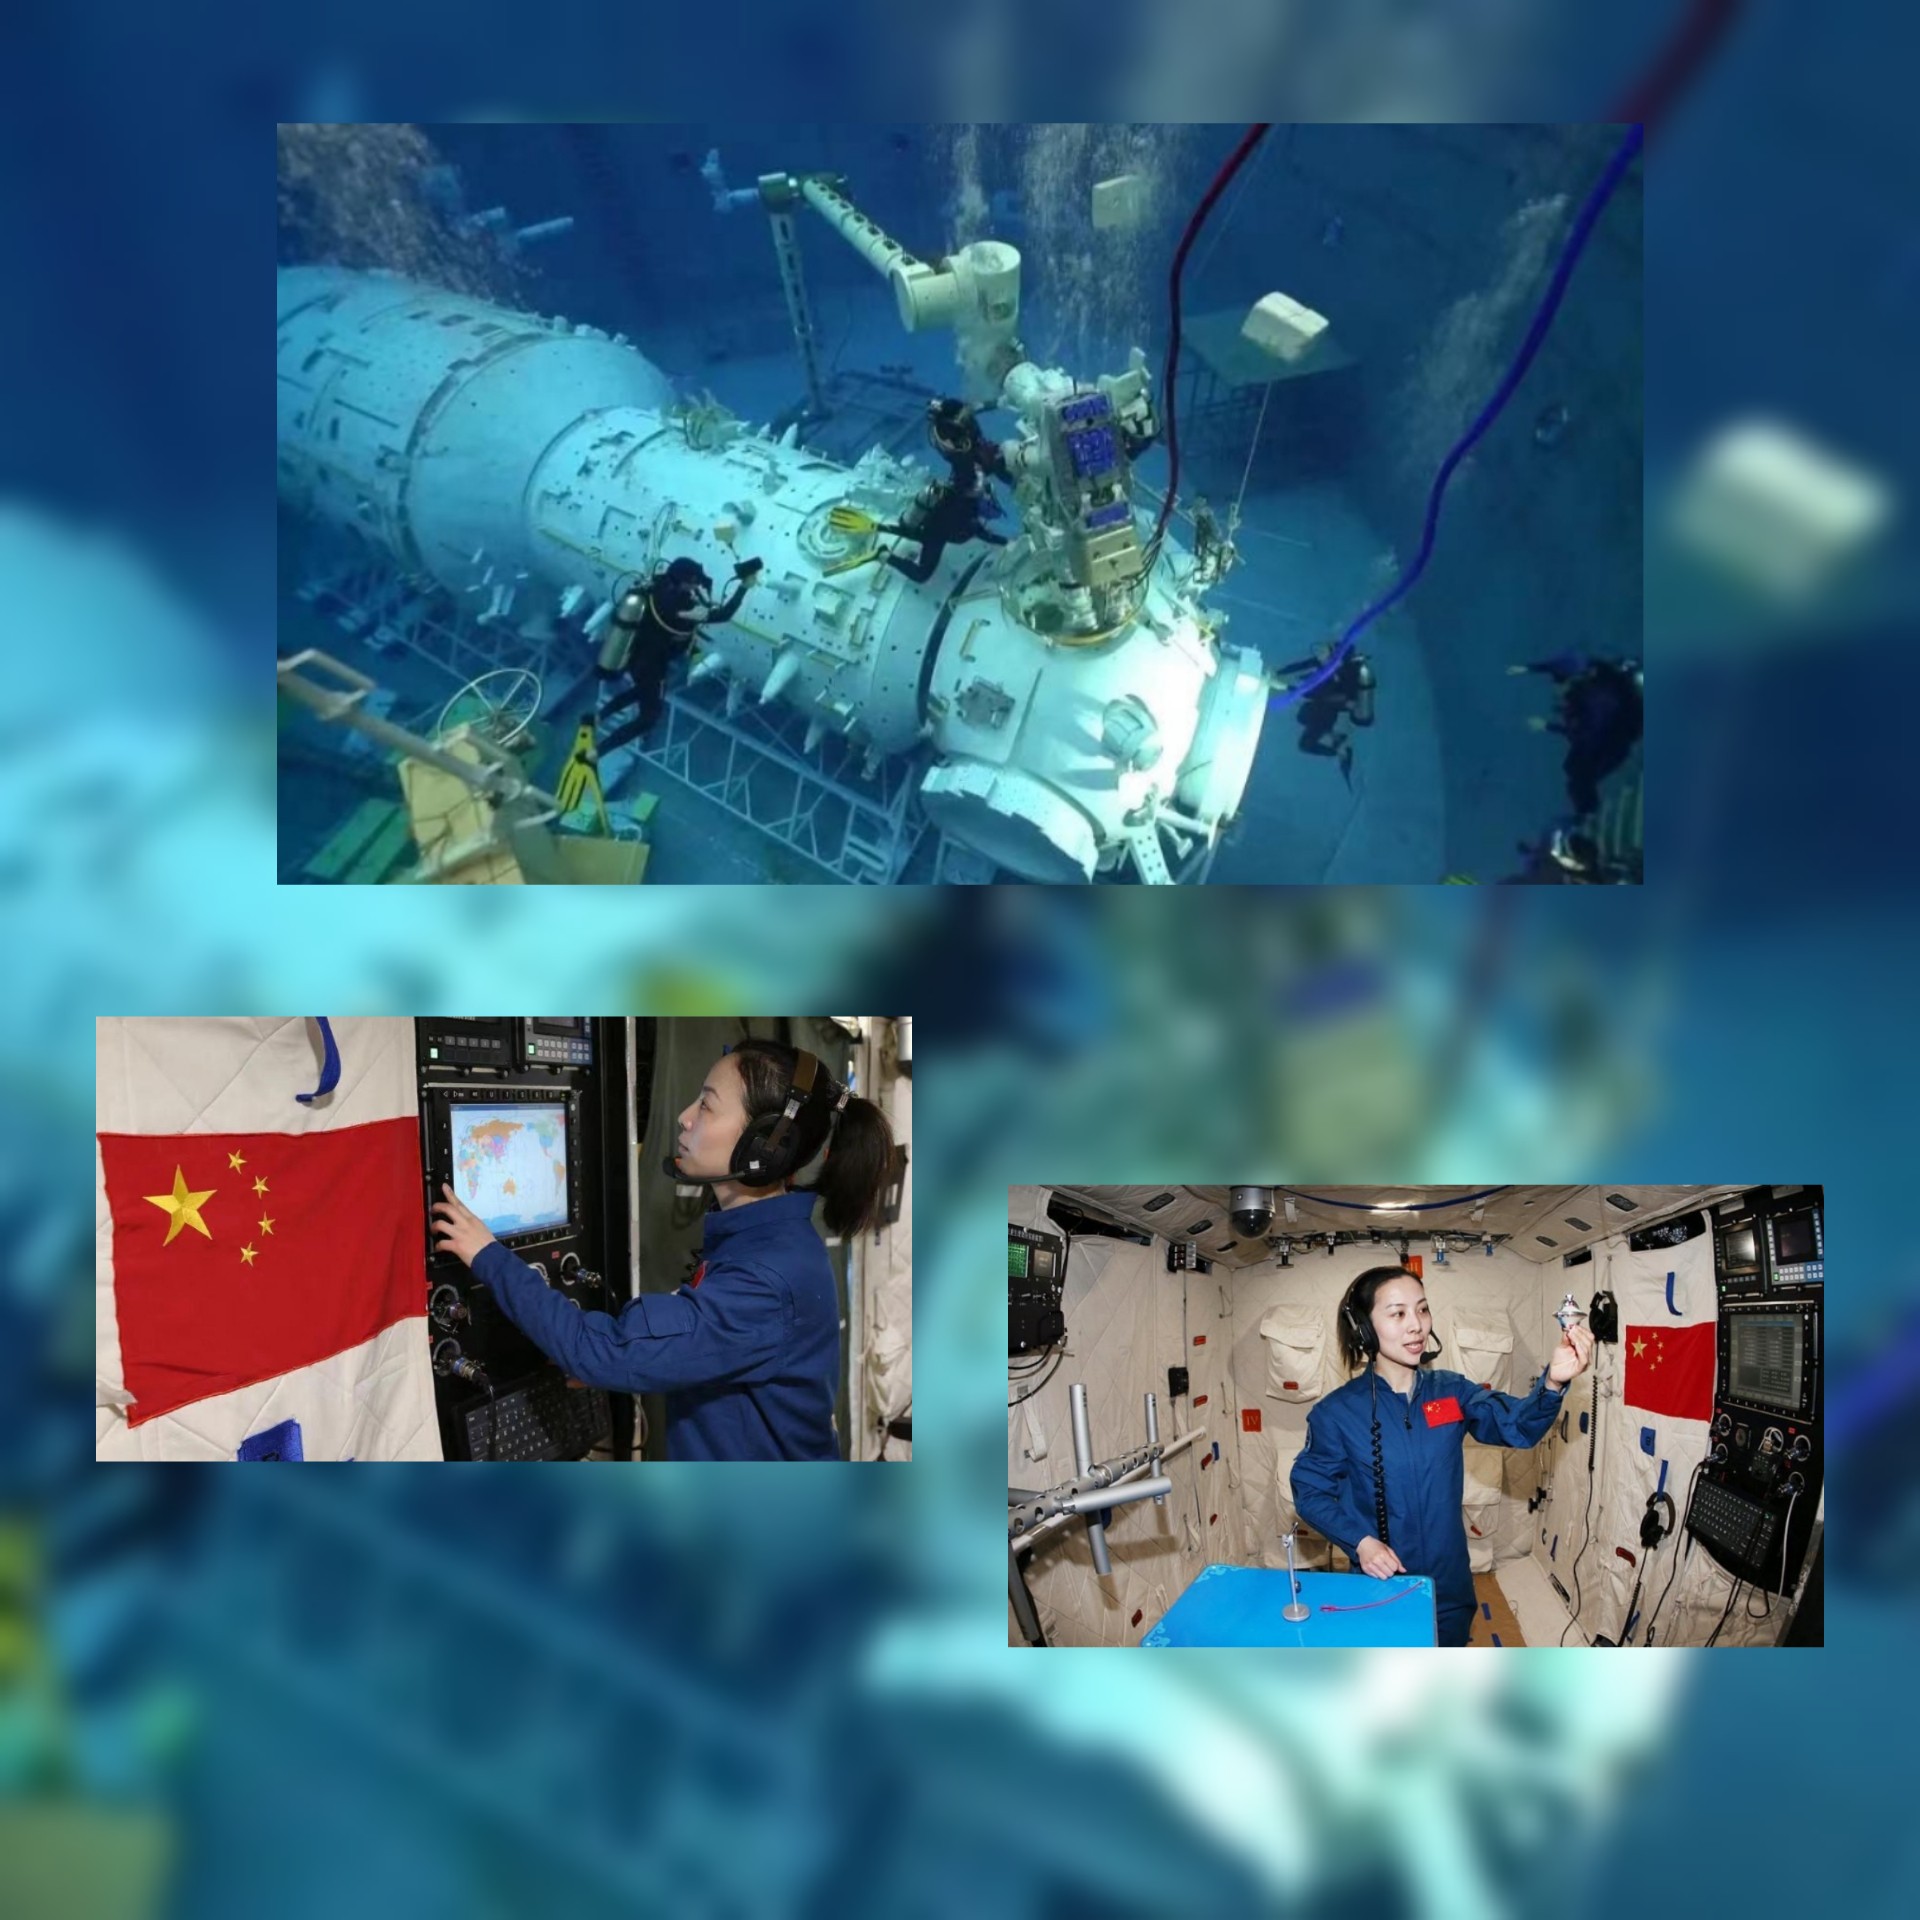 وانغ يا بينغ أول رائدة فضاء صينية تدخل محطة الفضاء الصينية شنتشو-13..ما هي مزايا رائدات الفضاء.